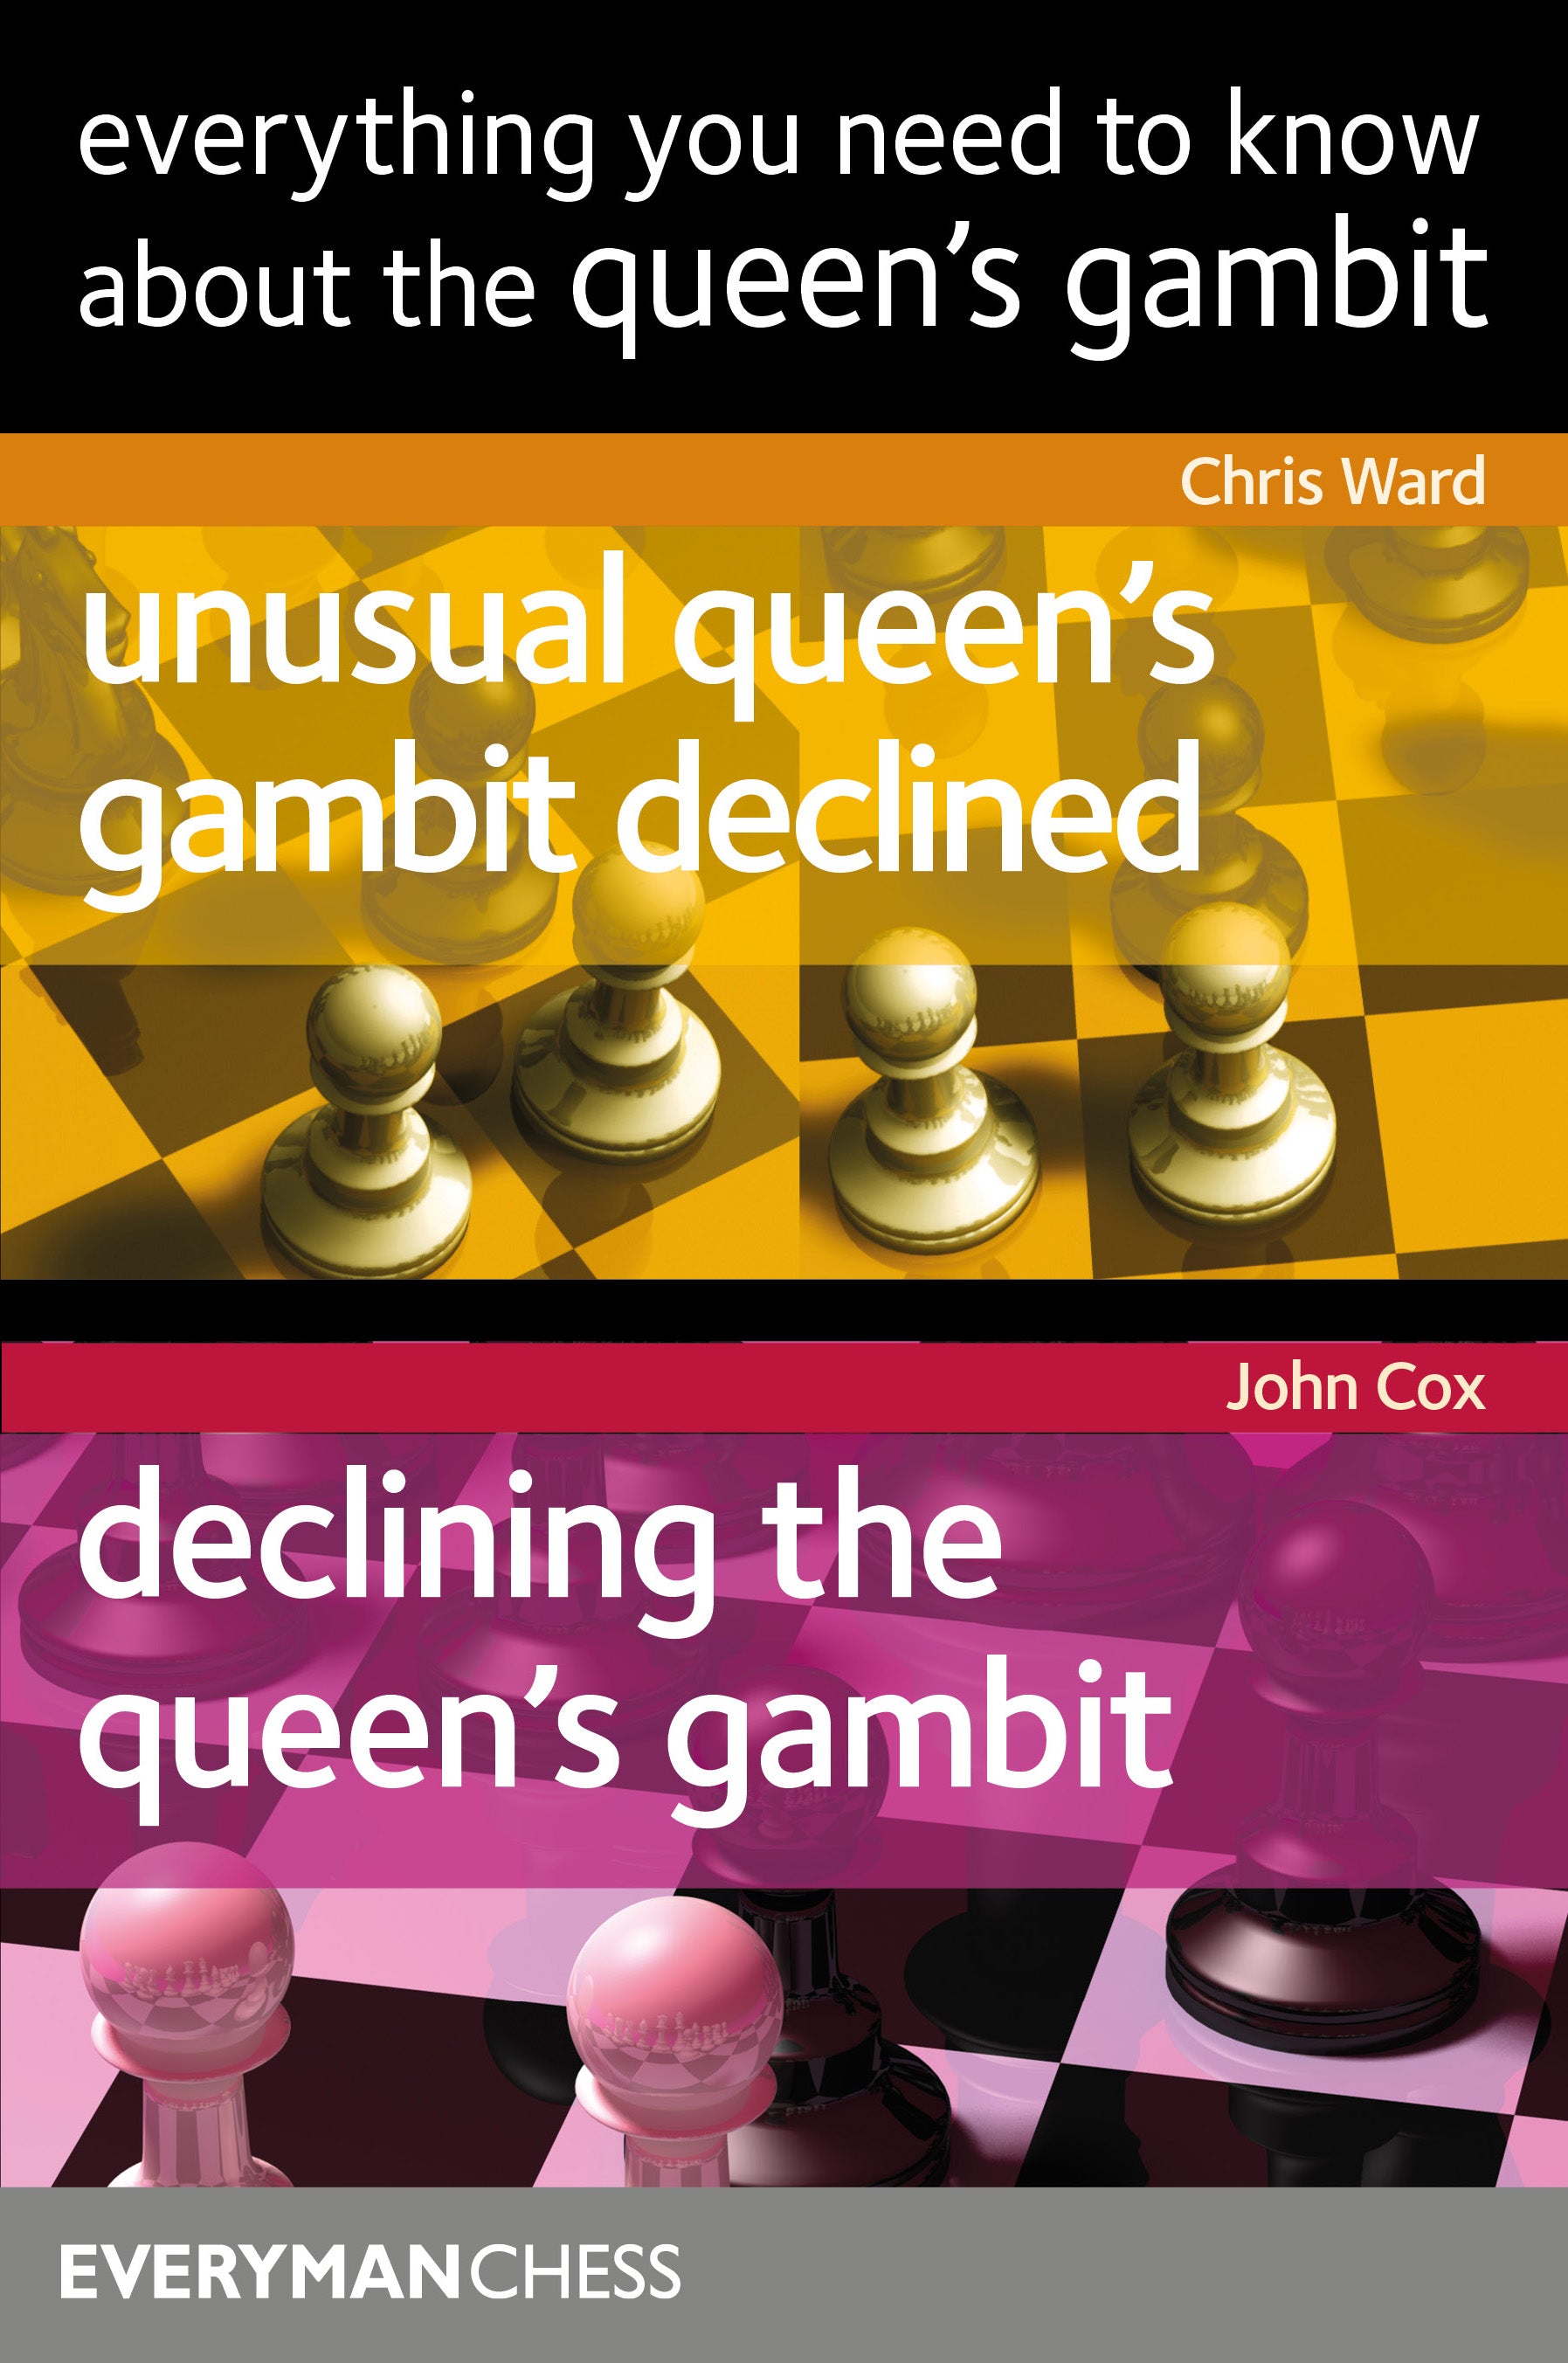 TheChessWebsite - Queens Gambit Declined 